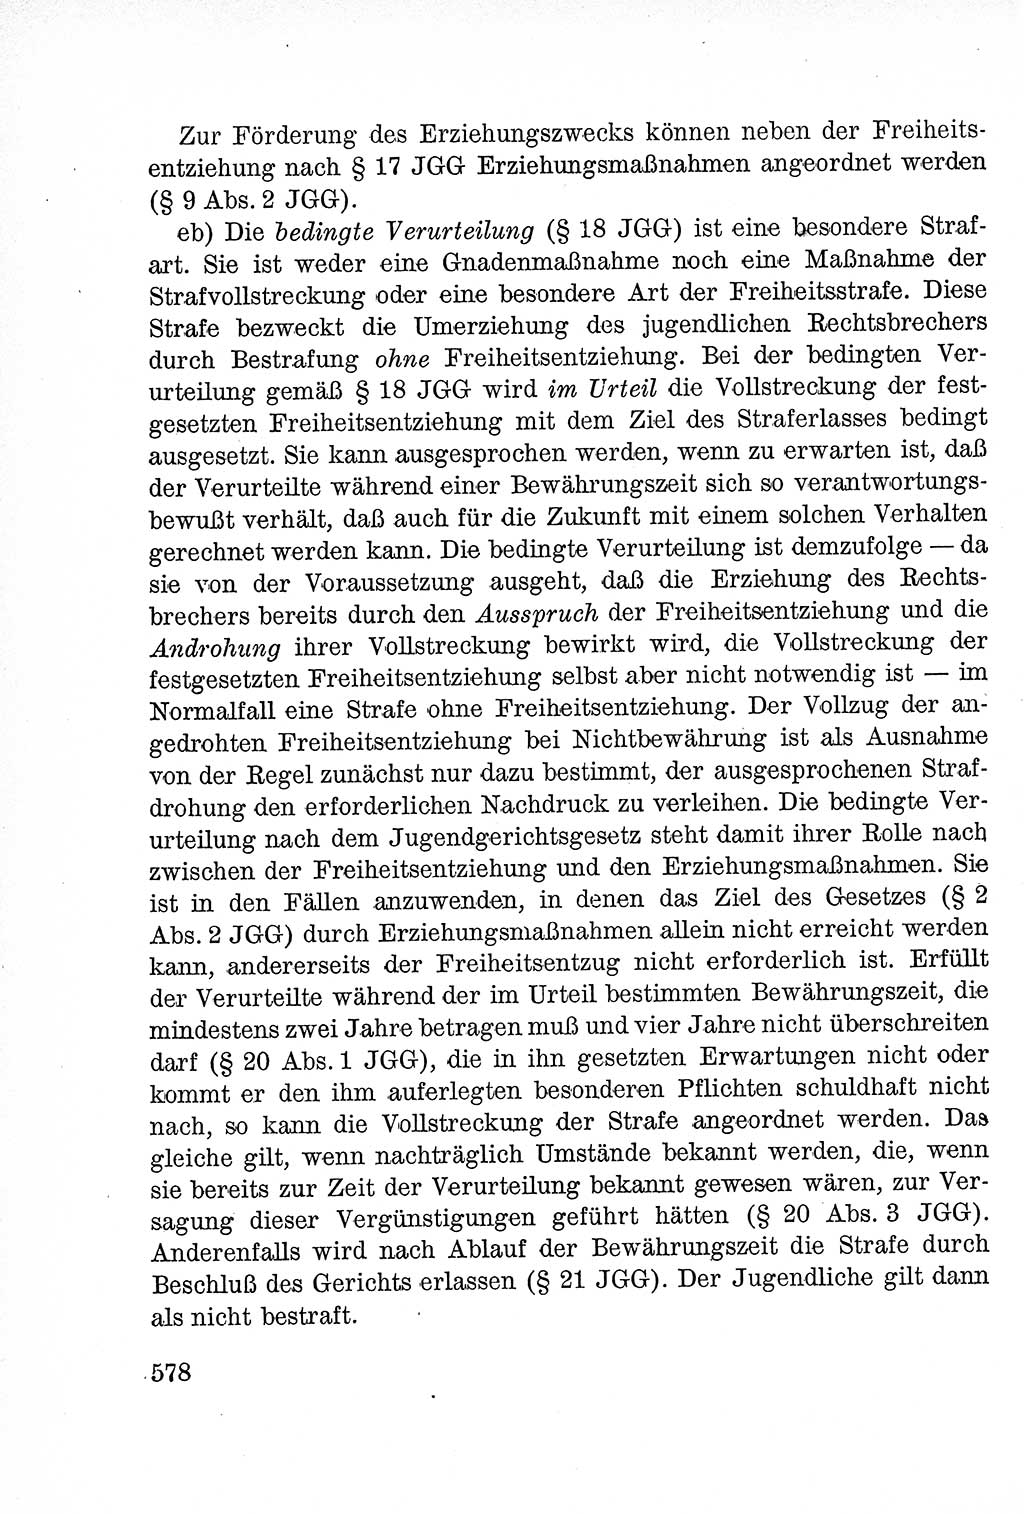 Lehrbuch des Strafrechts der Deutschen Demokratischen Republik (DDR), Allgemeiner Teil 1957, Seite 578 (Lb. Strafr. DDR AT 1957, S. 578)